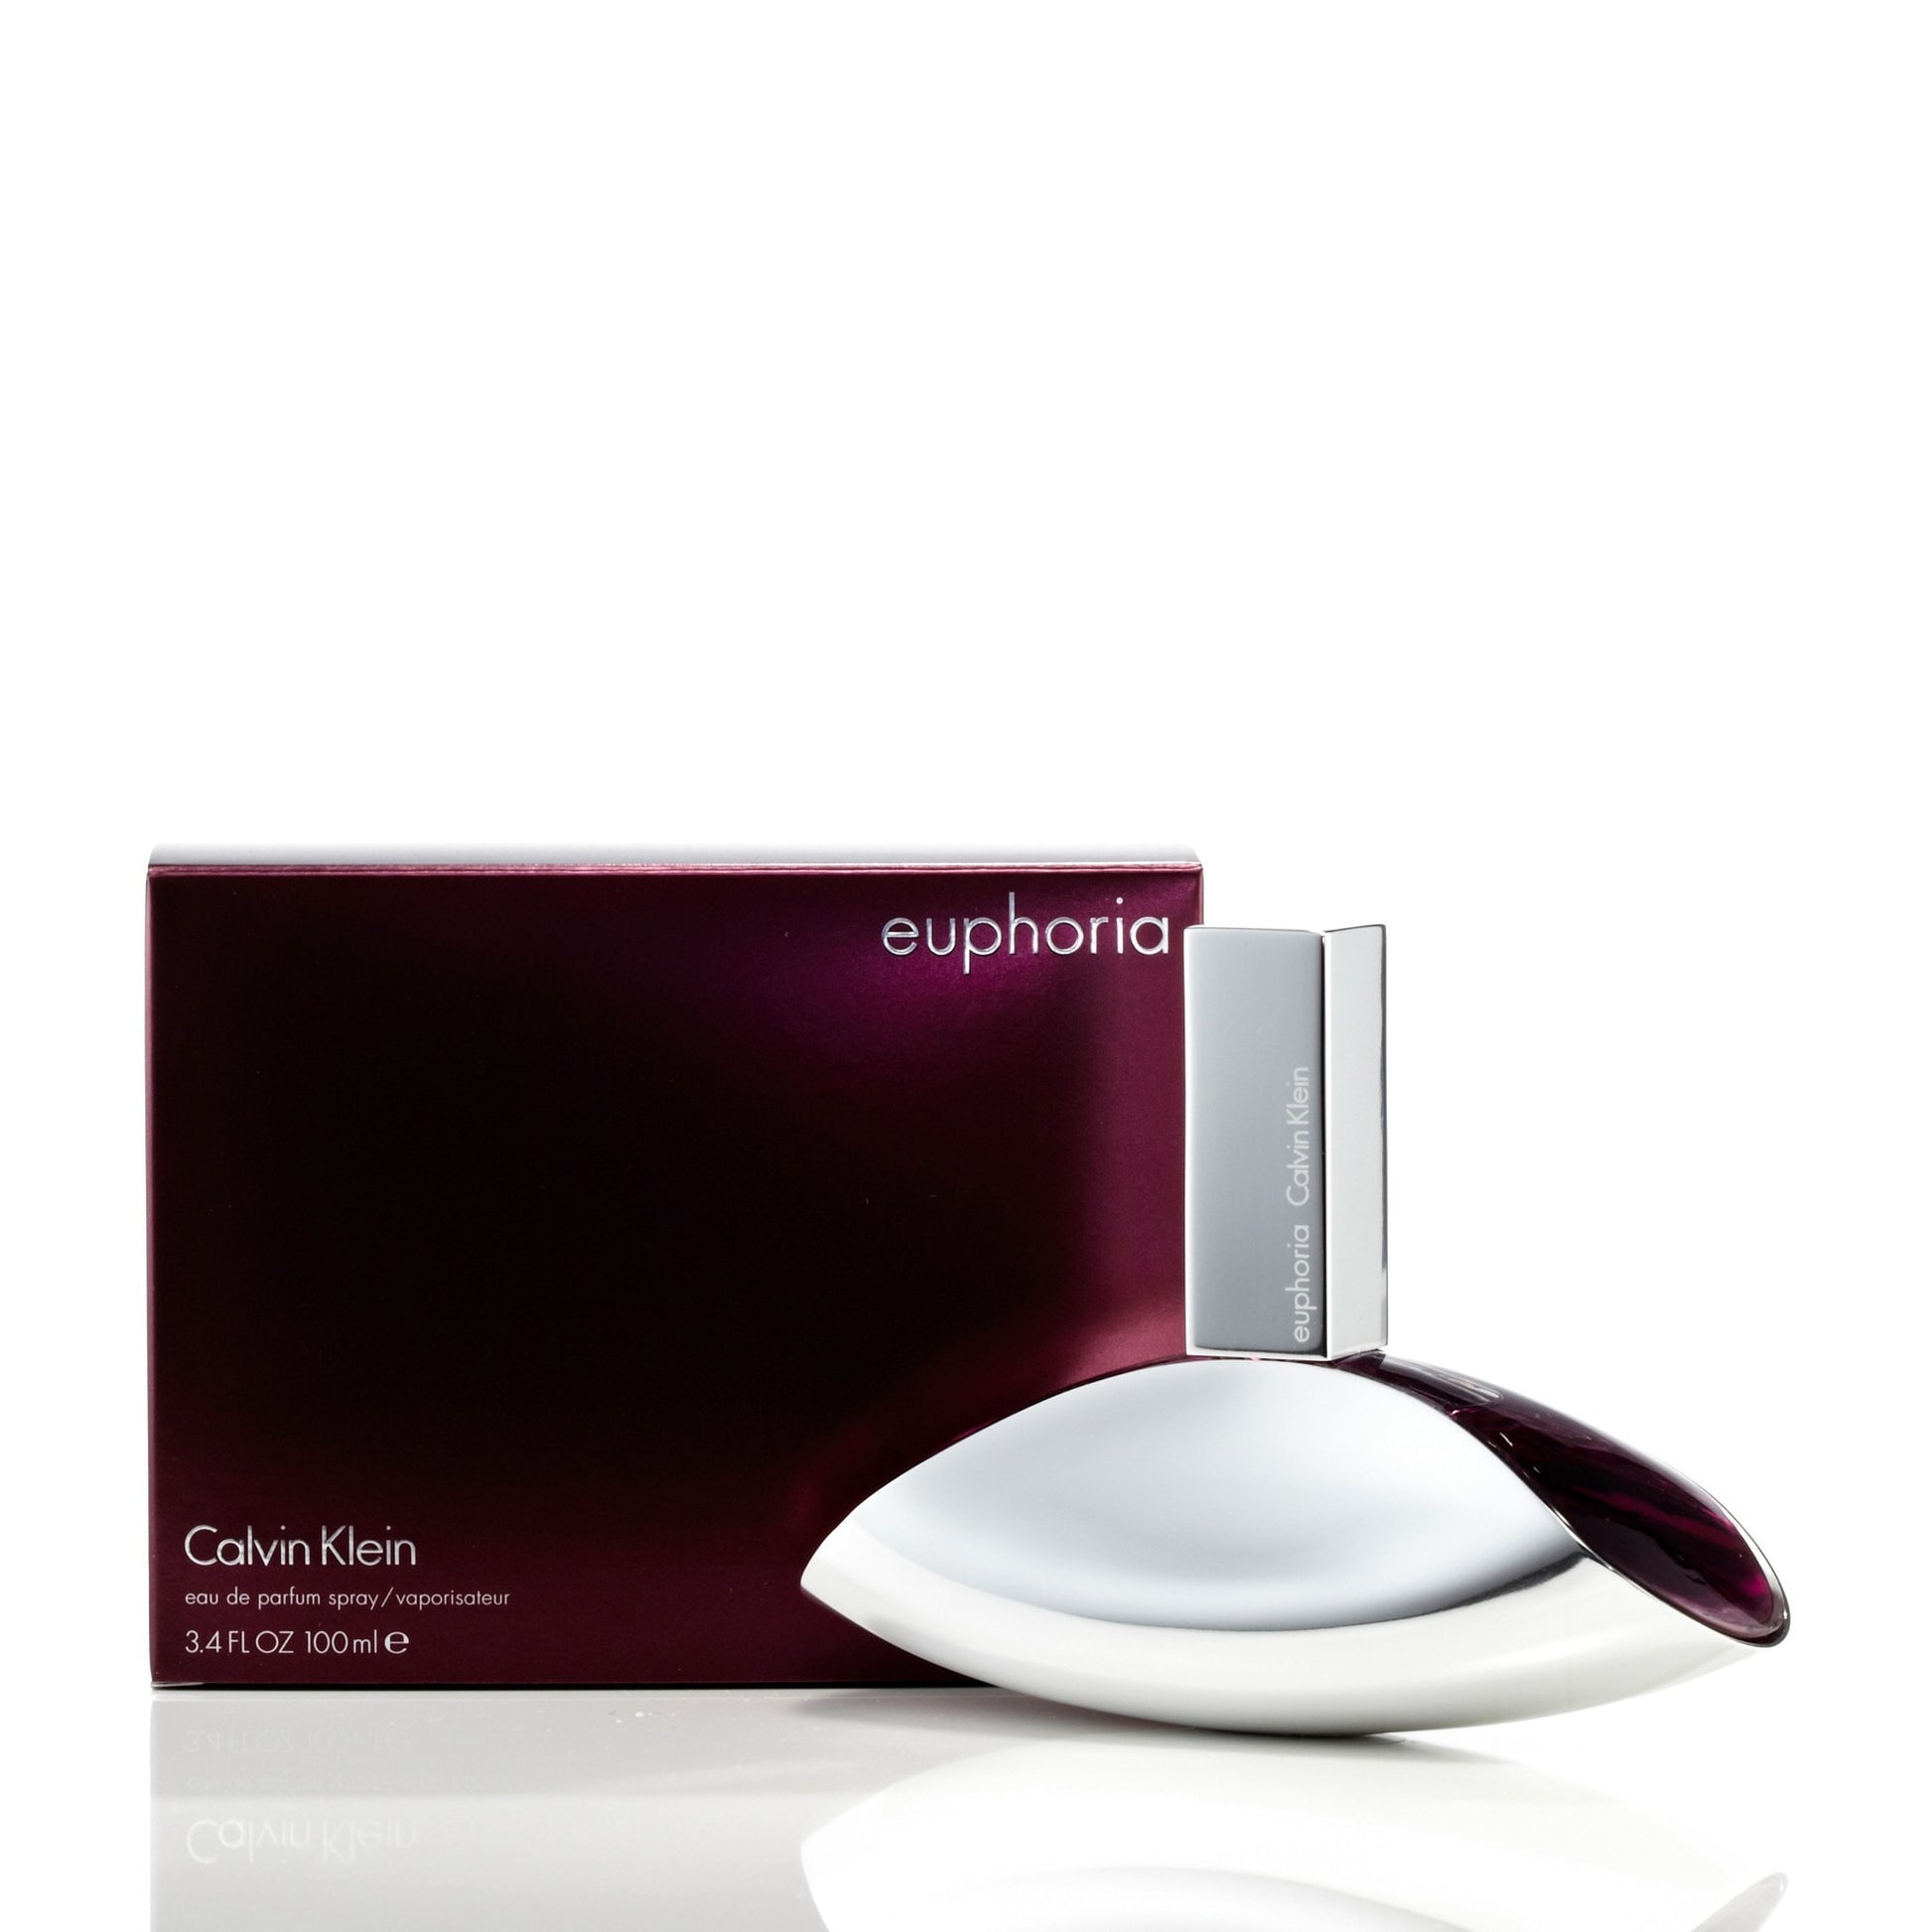 Euphoria Eau de Parfum Spray for Women by Calvin Klein 3.4 oz. Click to open in modal